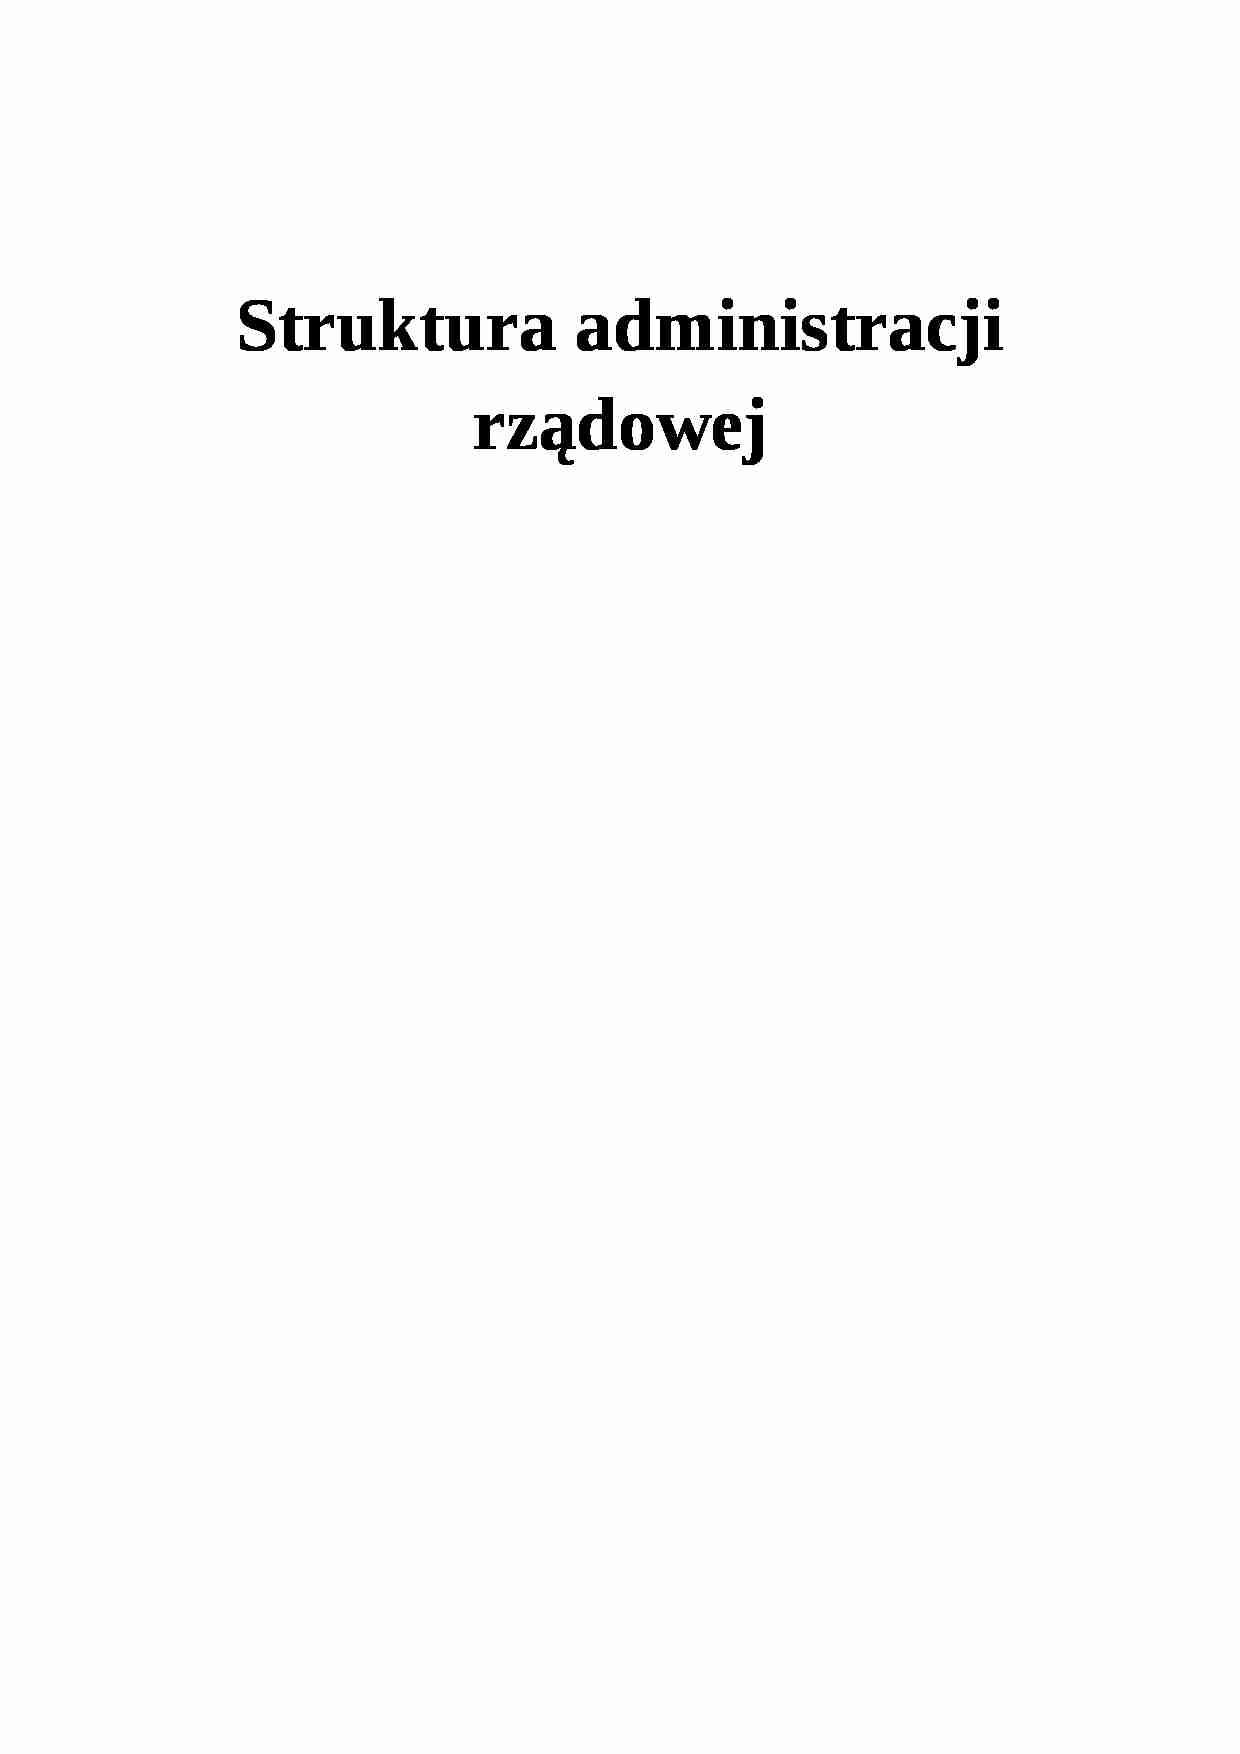 Struktura administracji rządowej - strona 1